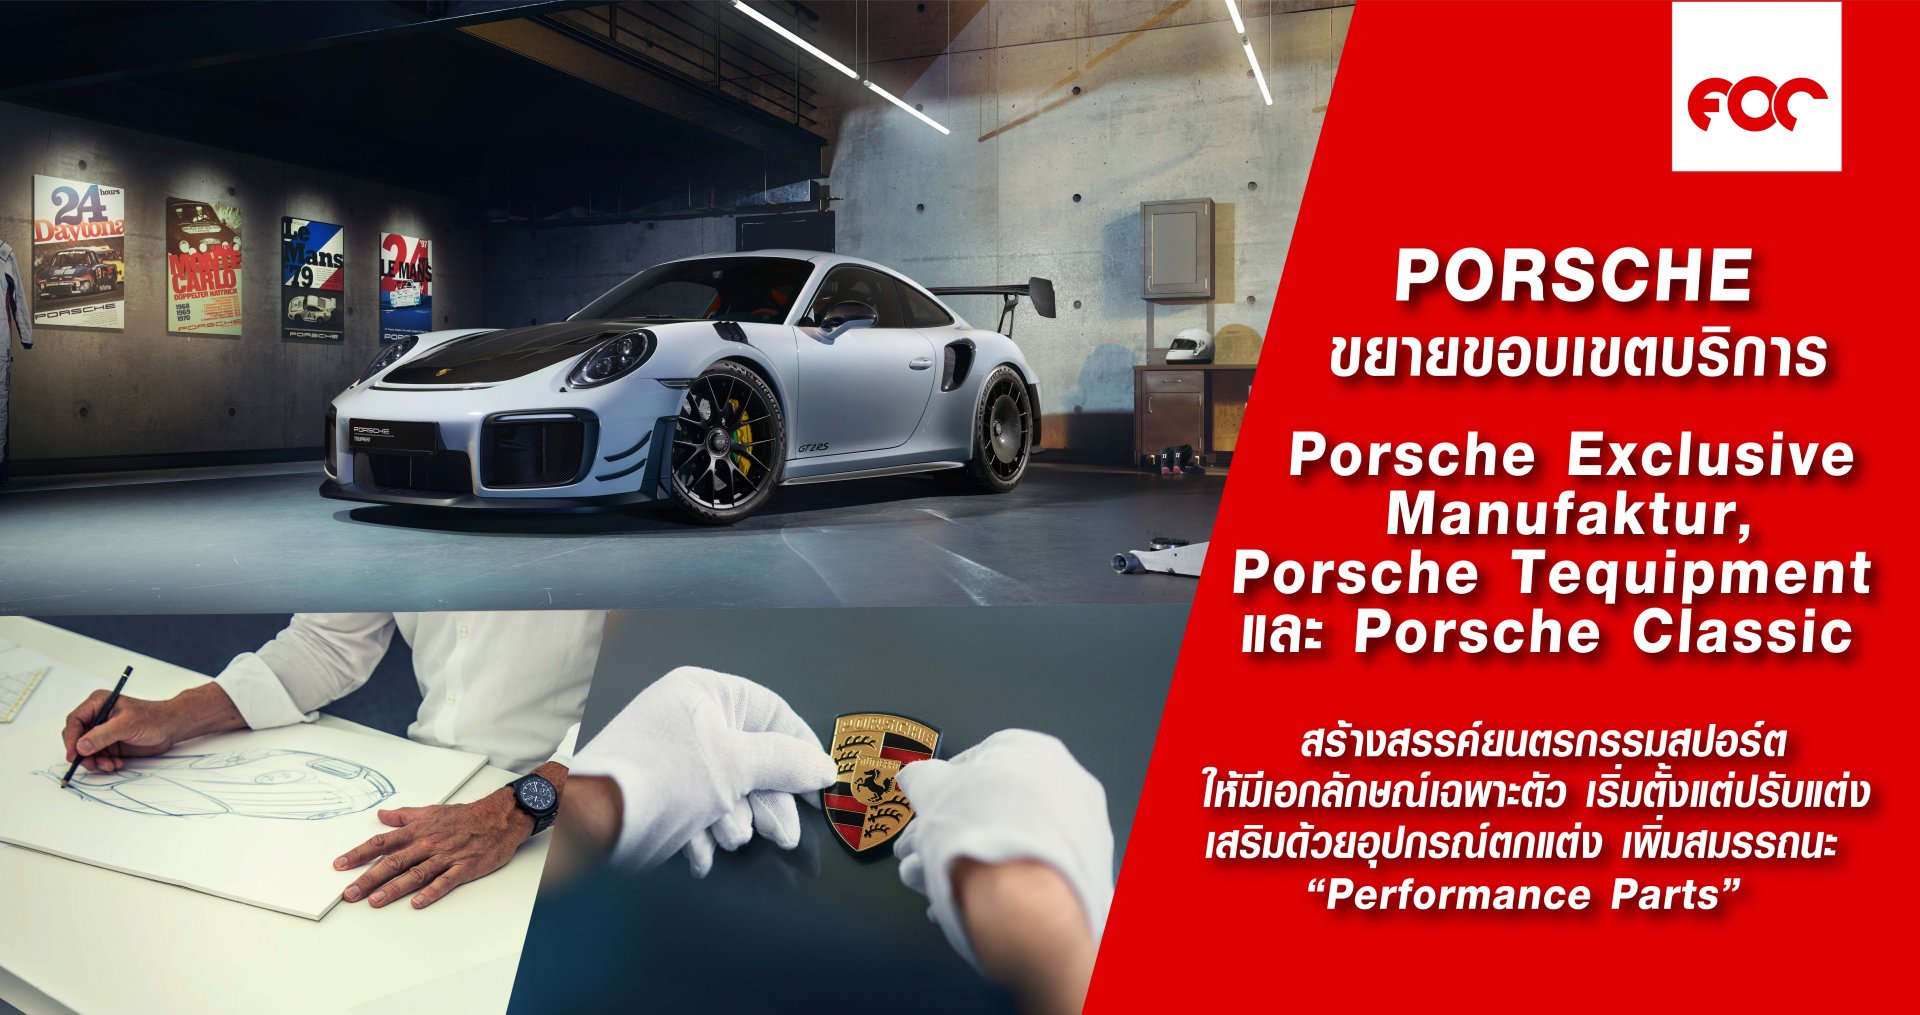 ยกระดับยนตรกรรมสปอร์ต และขยายขอบเขตงานบริการ Porsche Exclusive Manufaktur, Porsche Tequipment และ Porsche Classic 